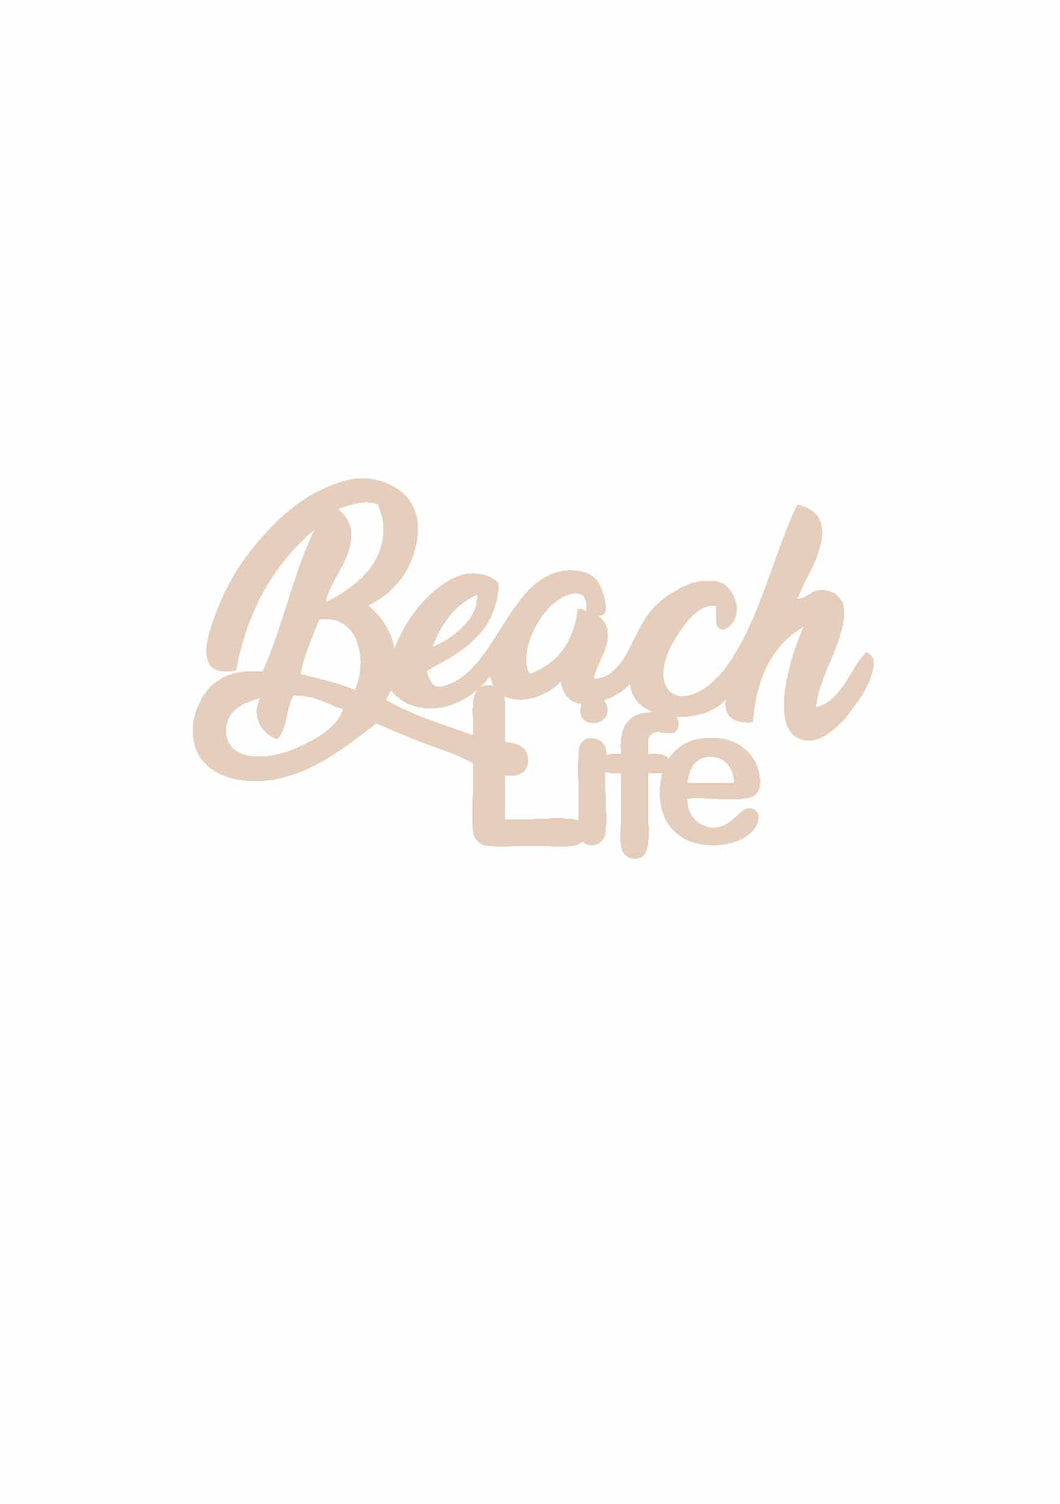 Beach Life (Text)